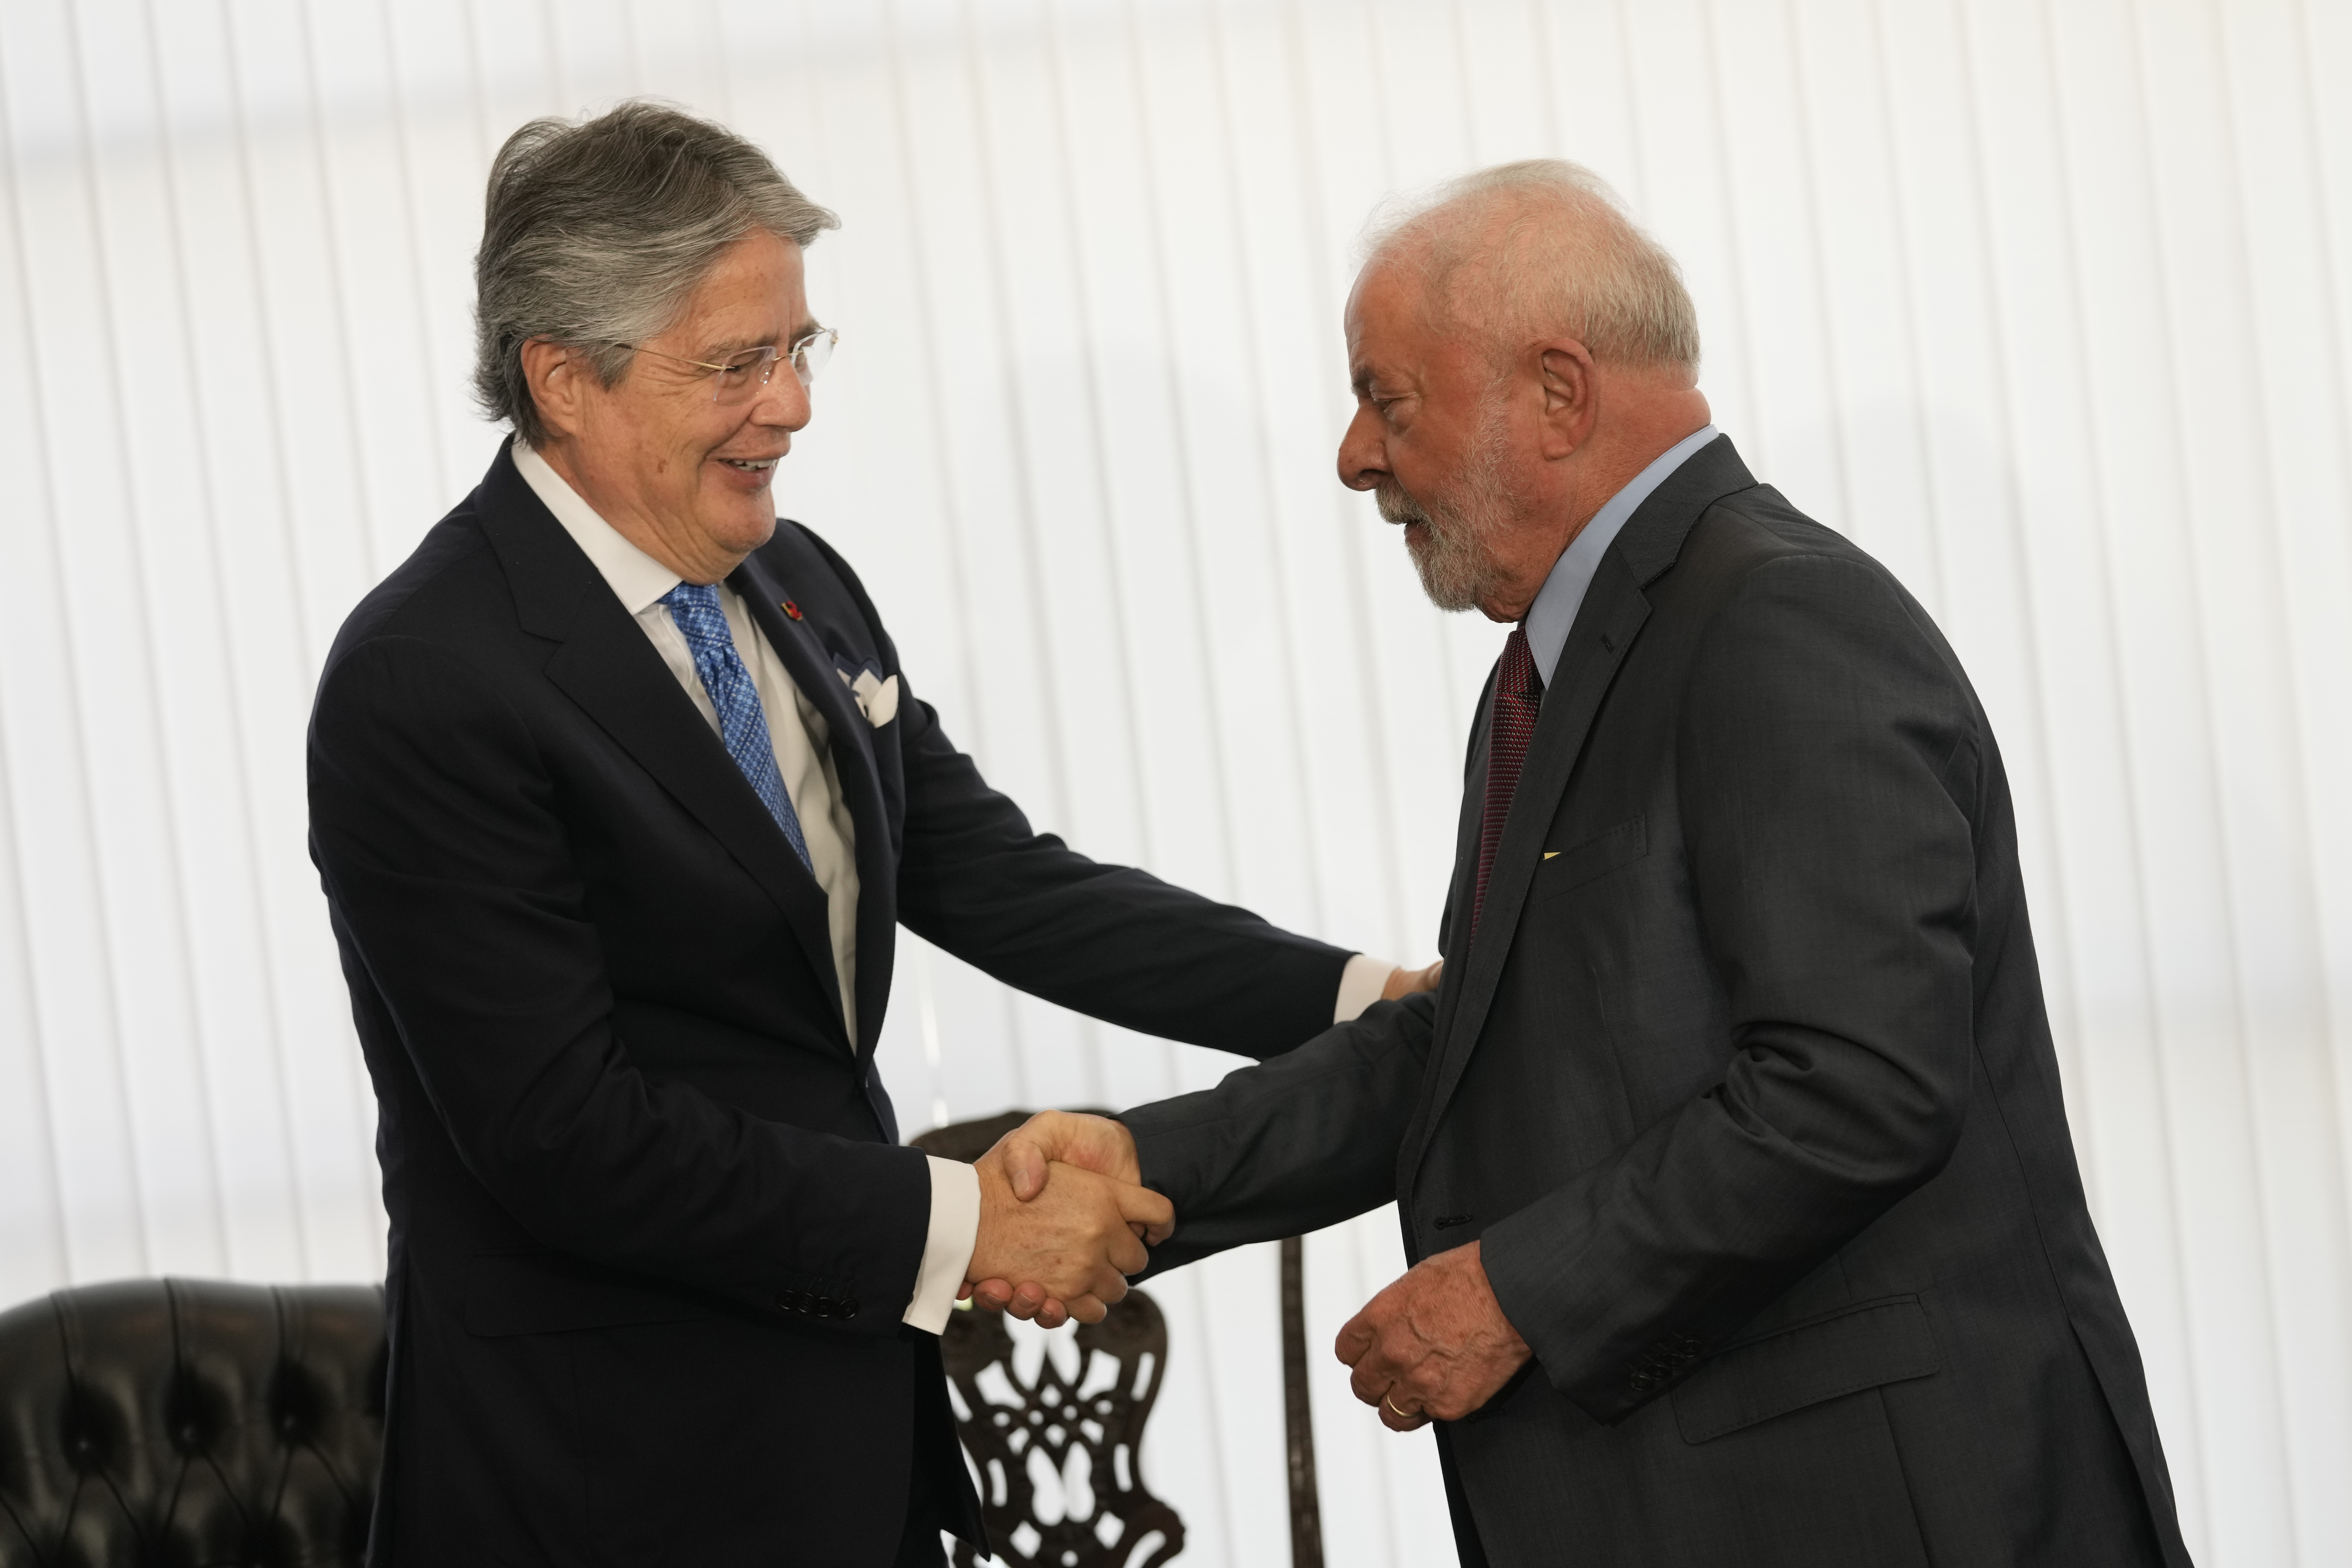 Los presidentes de Ecuador y Brasil se reunieron para tratar temas de cooperación mutua en materia de seguridad, medioambiente y programas sociales. (AP Foto/Eraldo Peres)